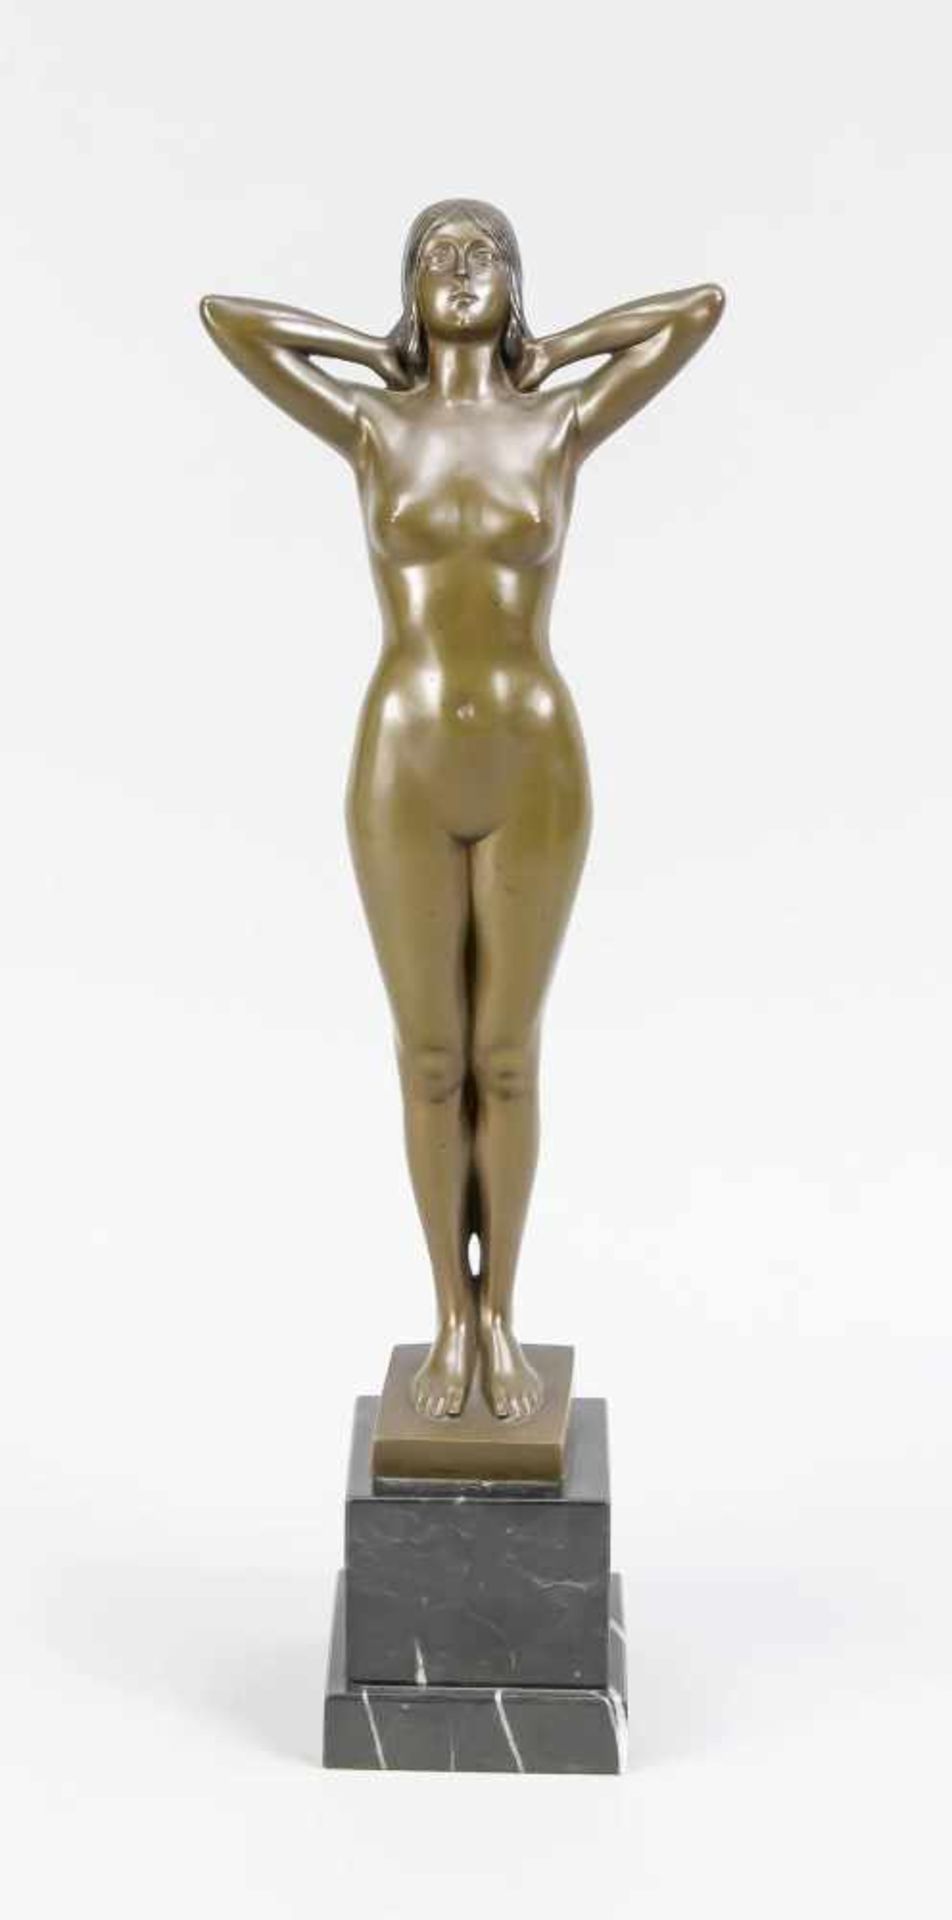 Stauss, Bildhauer um 1910, Jugendstil-Statuette einer nackten Frau, die sich das Haar inden Nacken